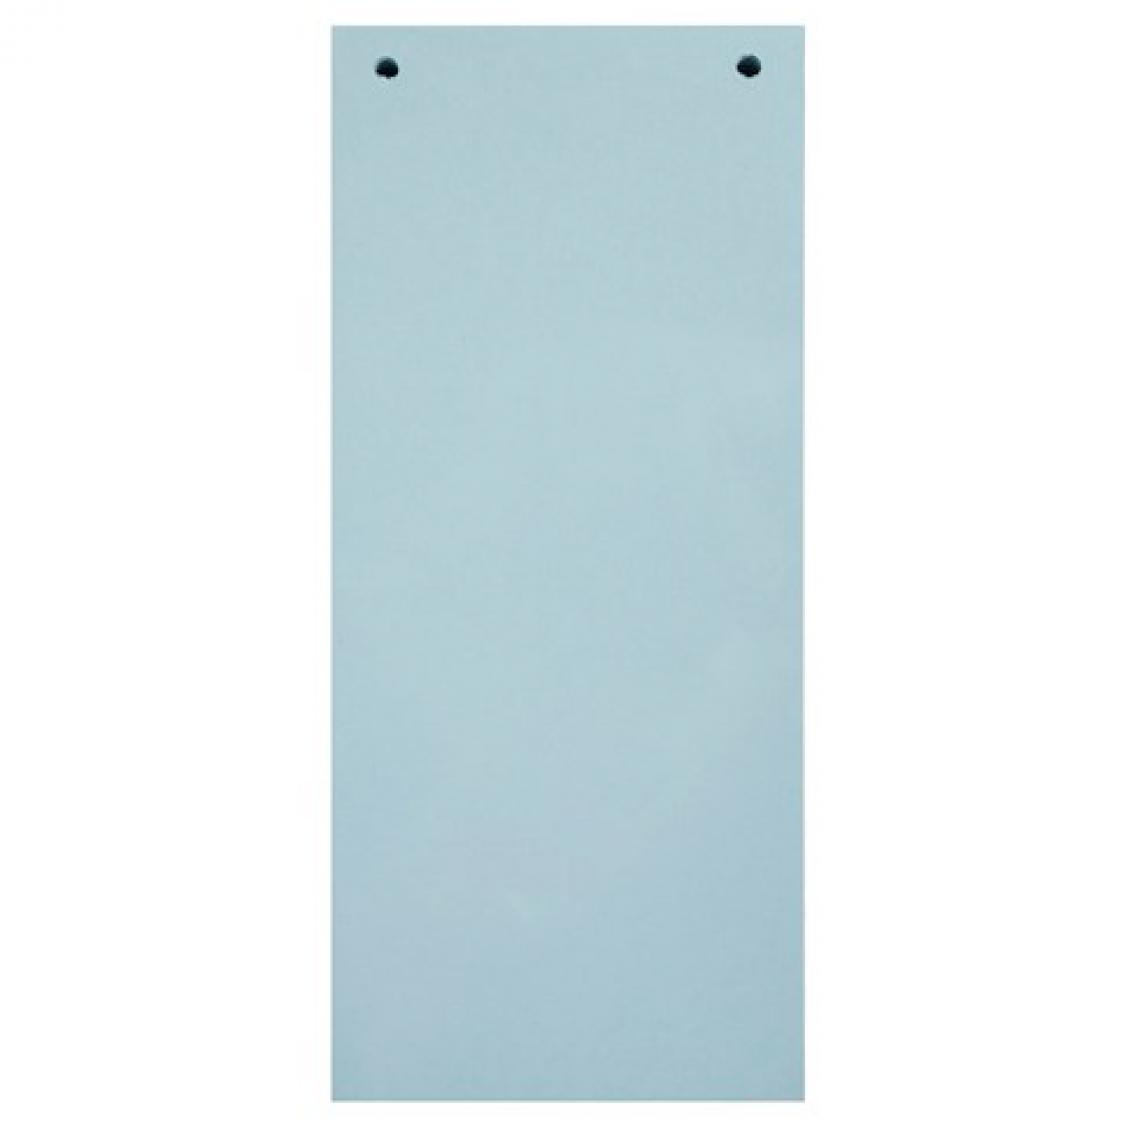 Exacompta - Paquet 100 fiches intercalaires horizontales unies perforées Forever - 105x240mm - Bleu clair - Lot de 7 - Accessoires Bureau